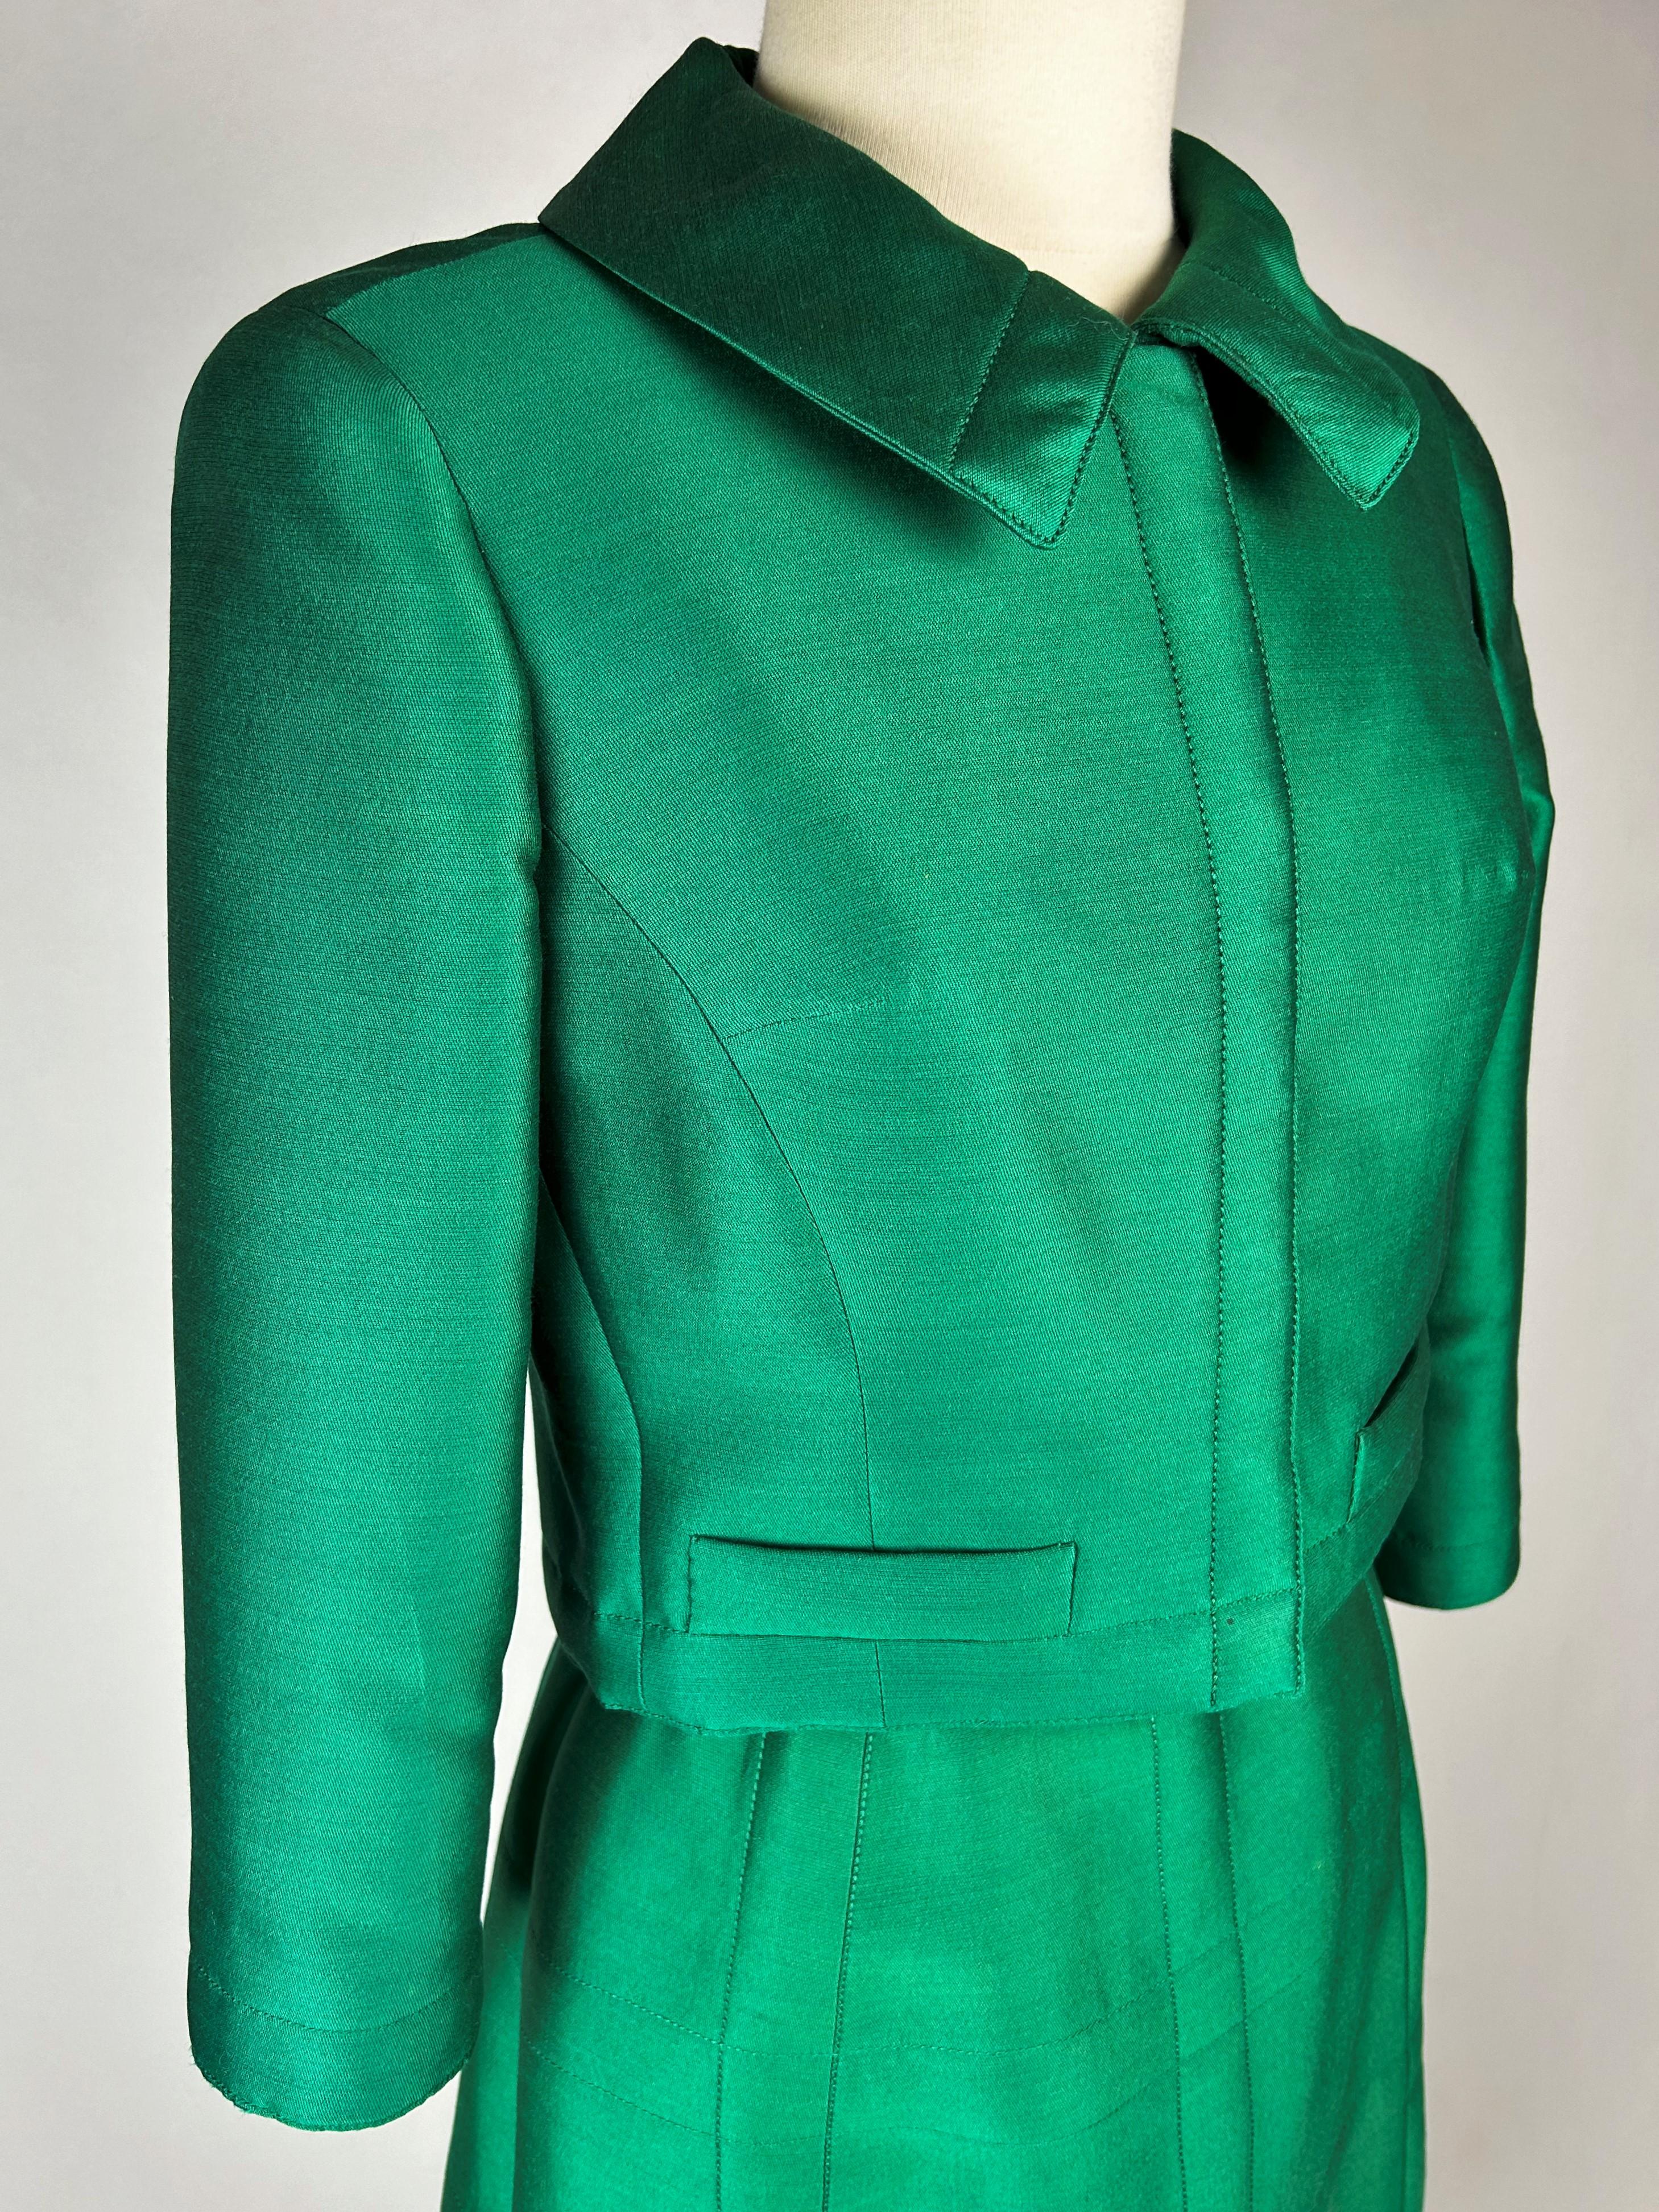 Circa 1968-1972

France

Elegant tailleur jupe Demi-Couture en gazar vert émeraude de Louis Féraud (autorisation spéciale Paris exécutée par Gabardin) datant de la fin des années 1960. Veste boléro, coupe droite avec col Claudes rabattu et manches